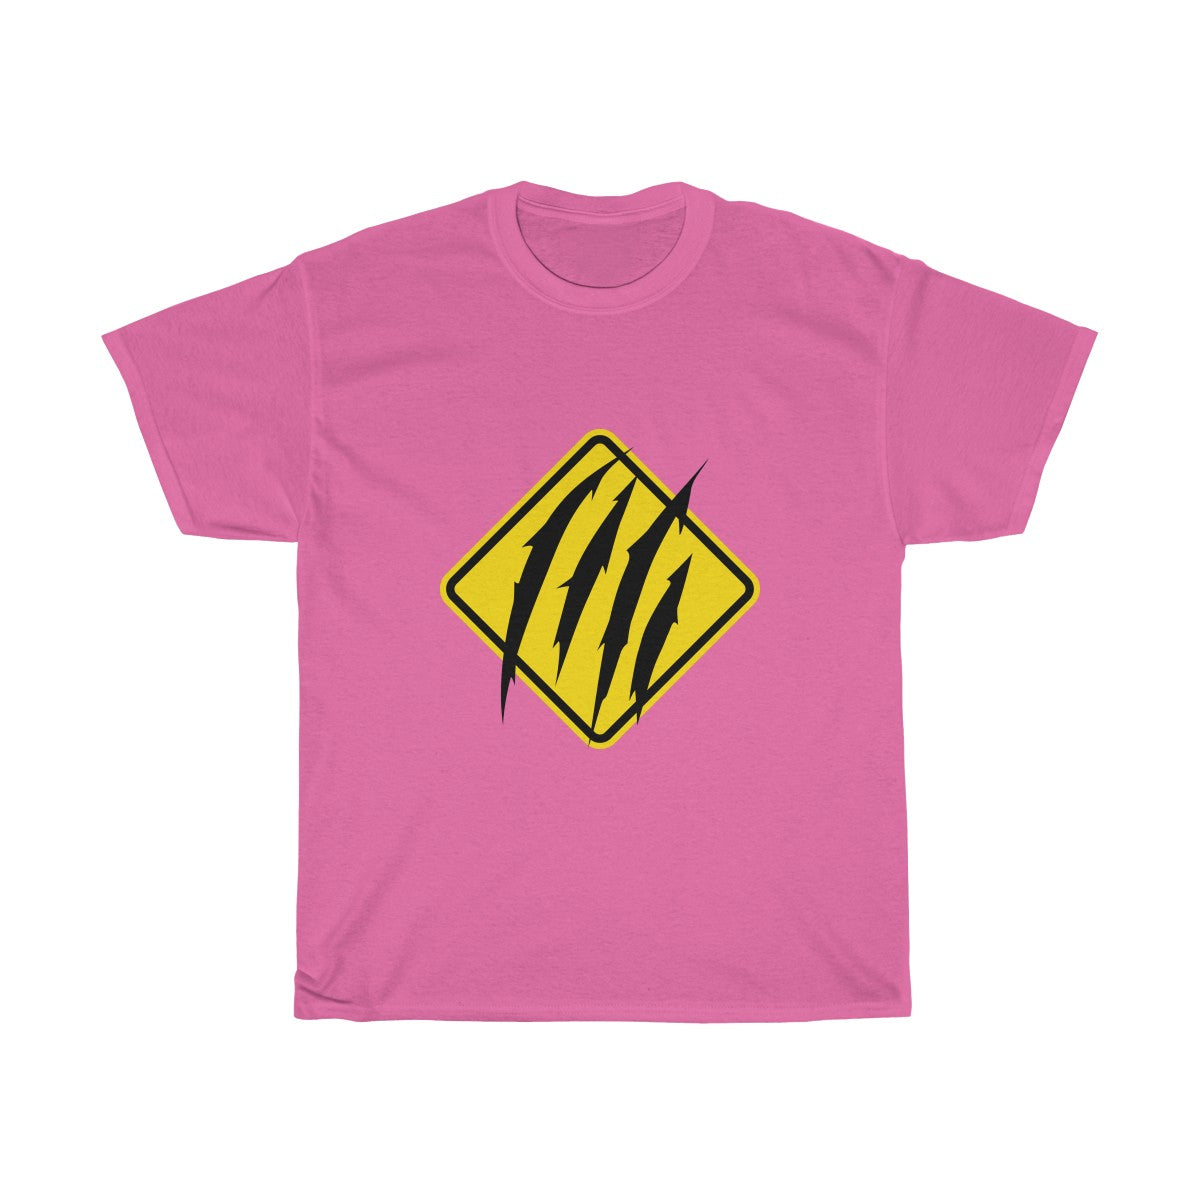 Scratch Warning - T-Shirt T-Shirt Wexon Pink S 